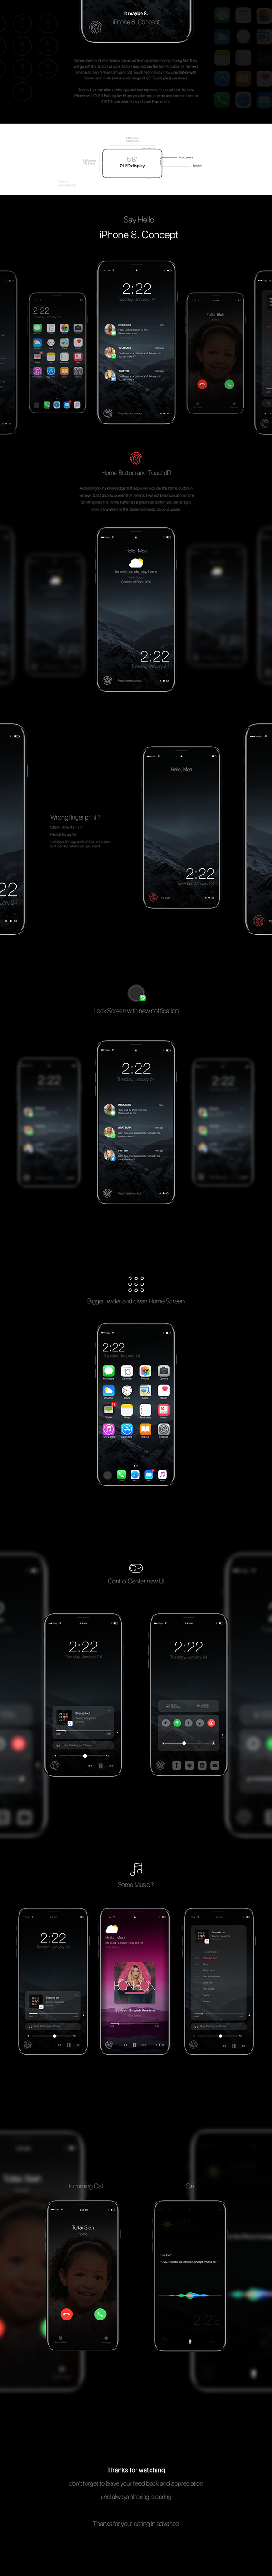 iPhone 8. Concept Design